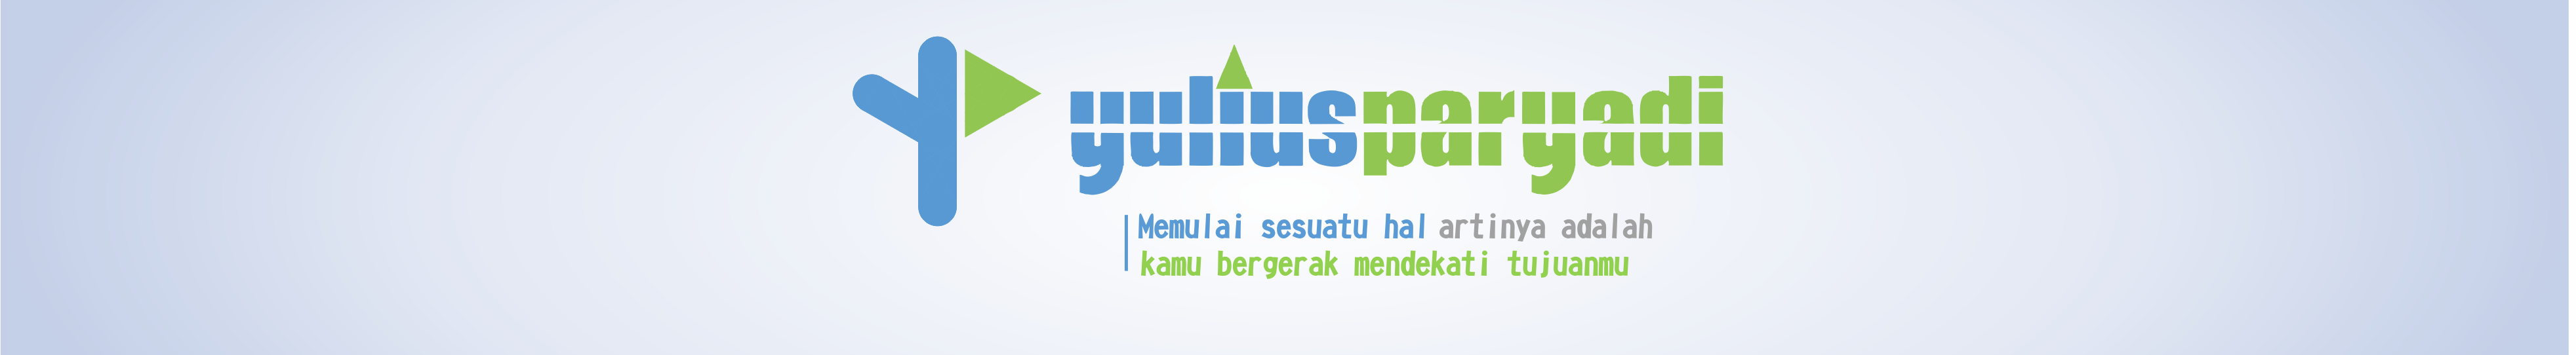 Banner de perfil de Yulius Paryadi